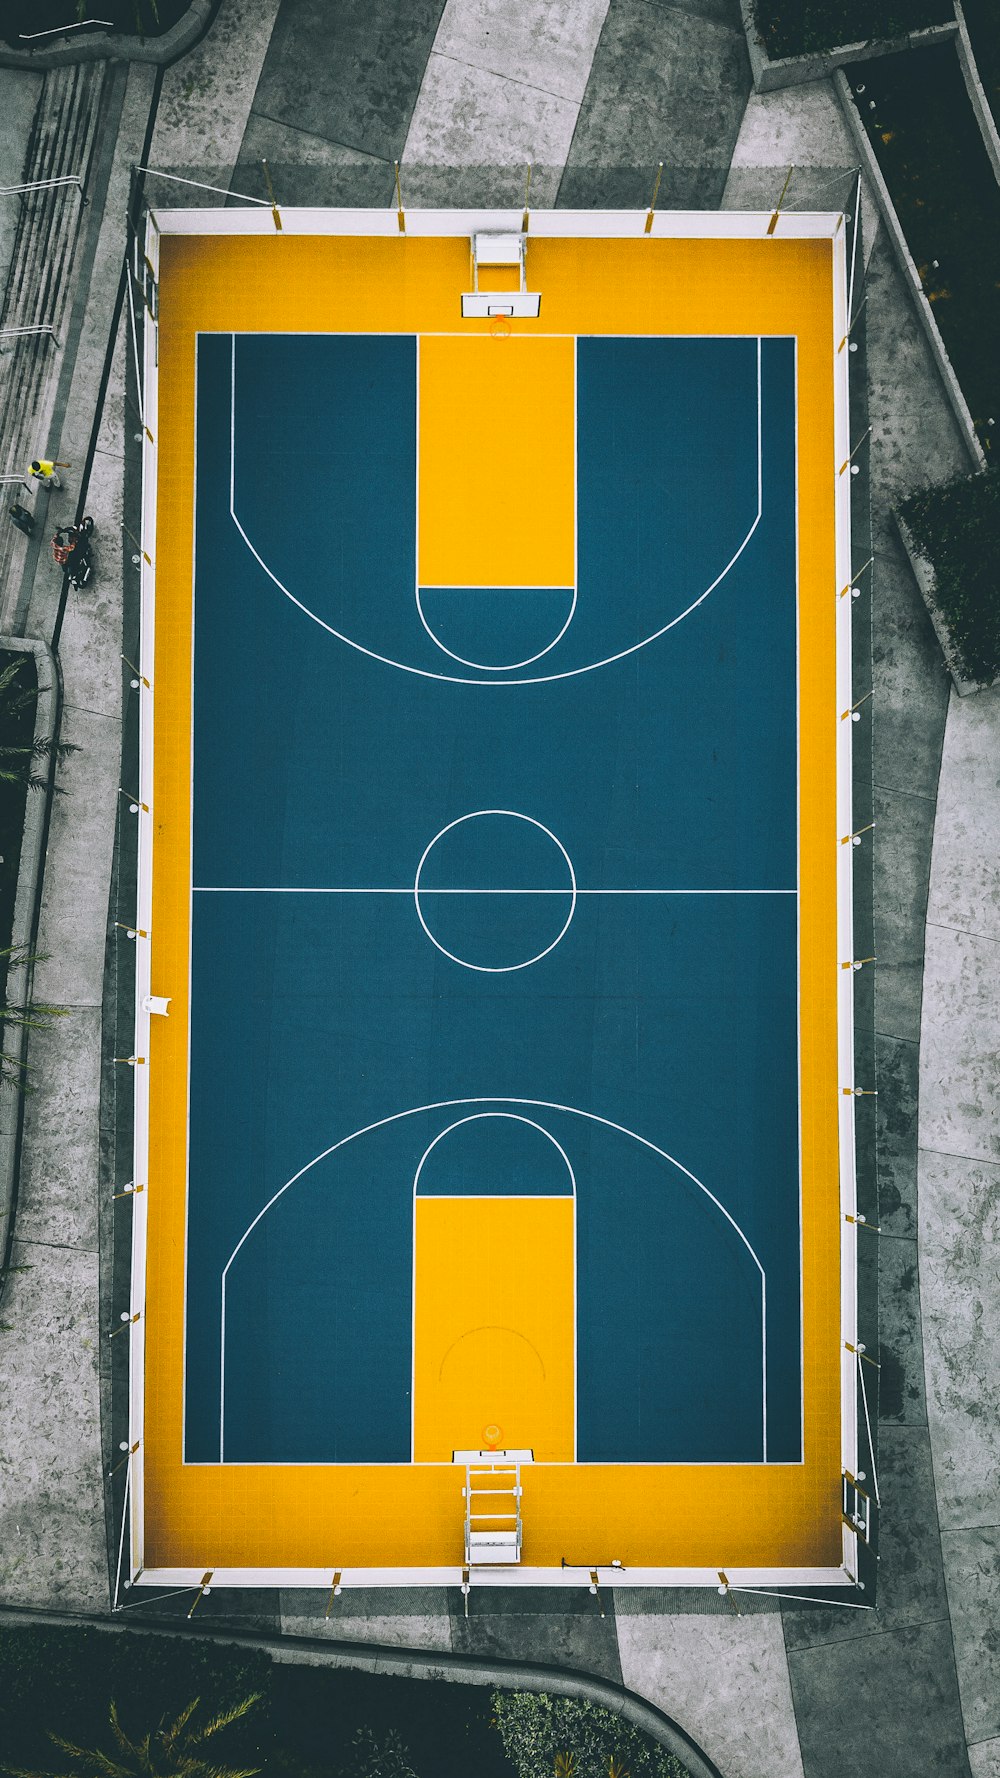 黄色と青のバスケットボールコートの空中写真